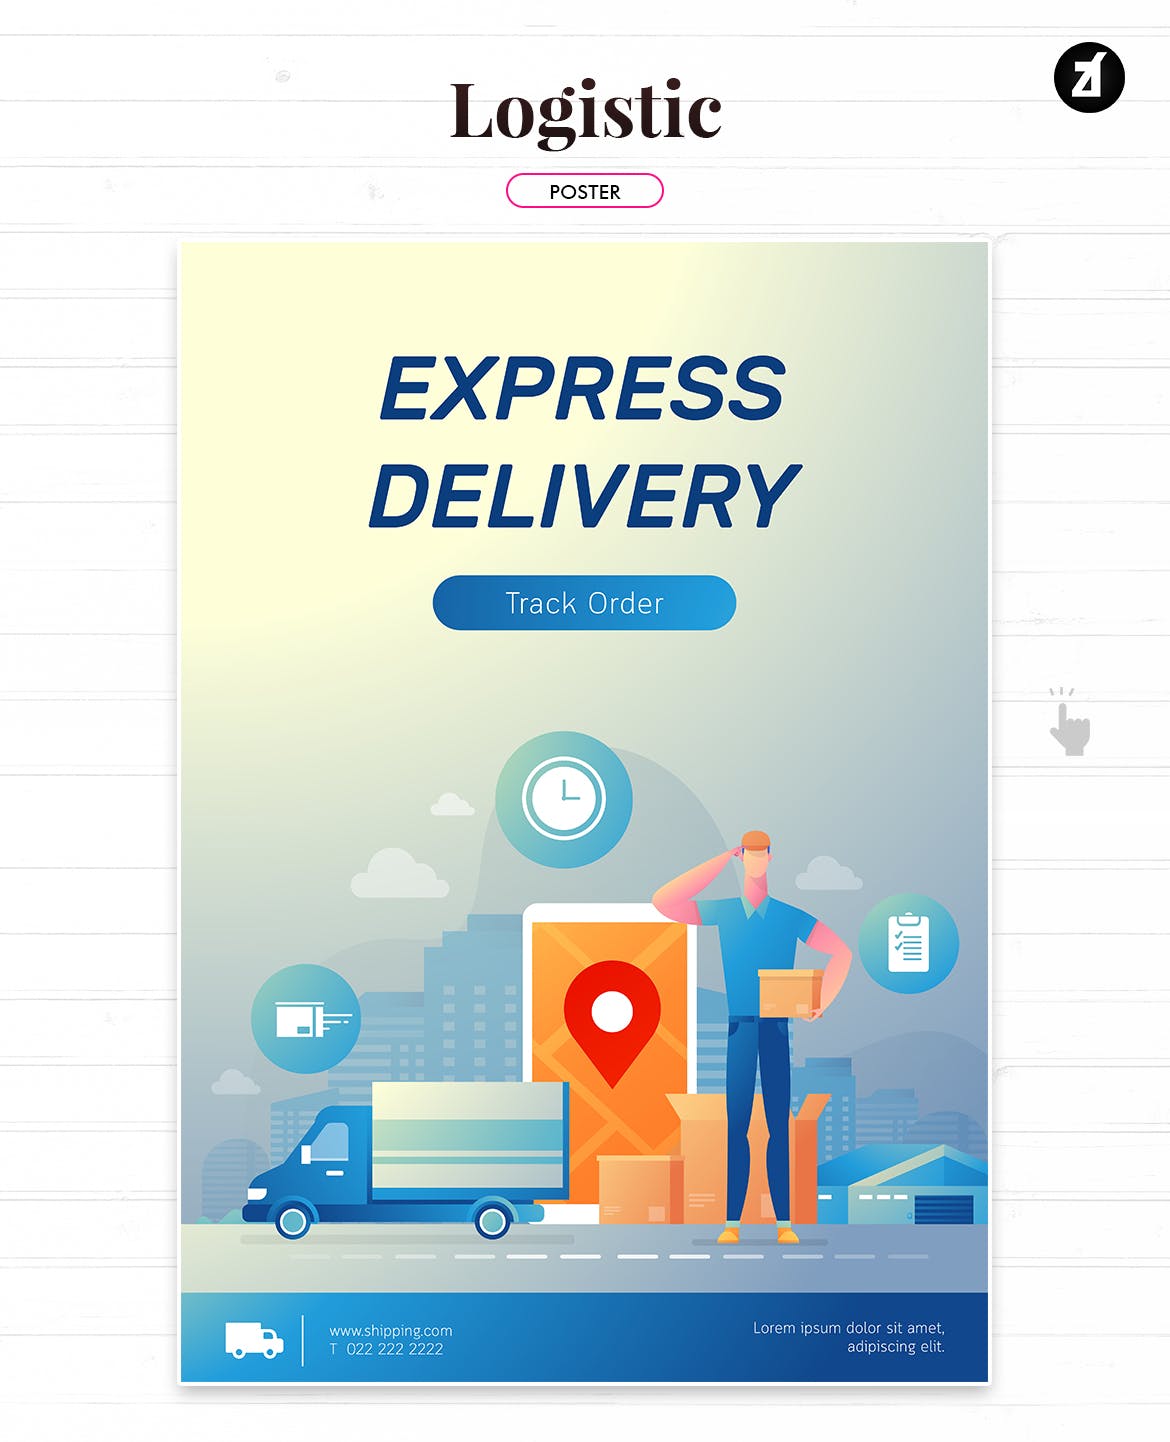 物流配送主题矢量插画设计素材 Logistic and delivery illustration with layout插图3